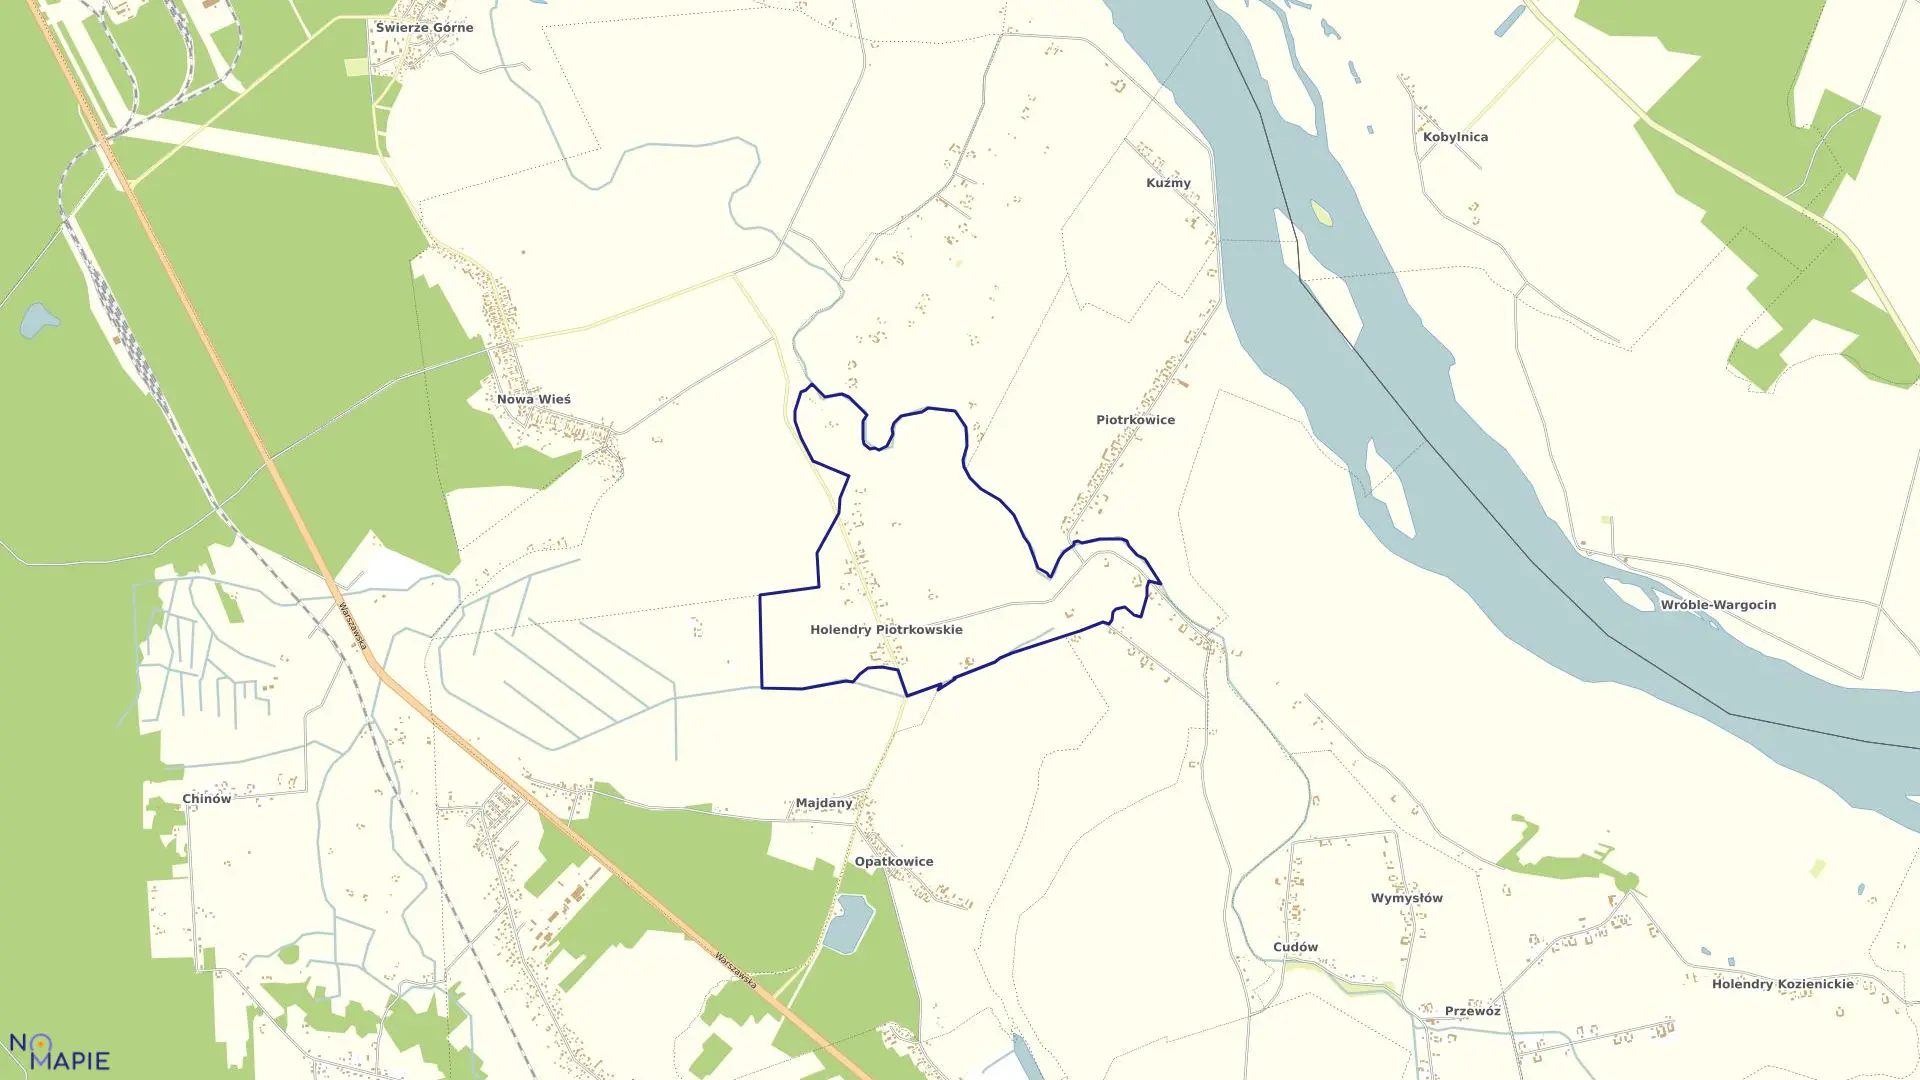 Mapa obrębu Holendry Piotrkowskie w gminie Kozienice